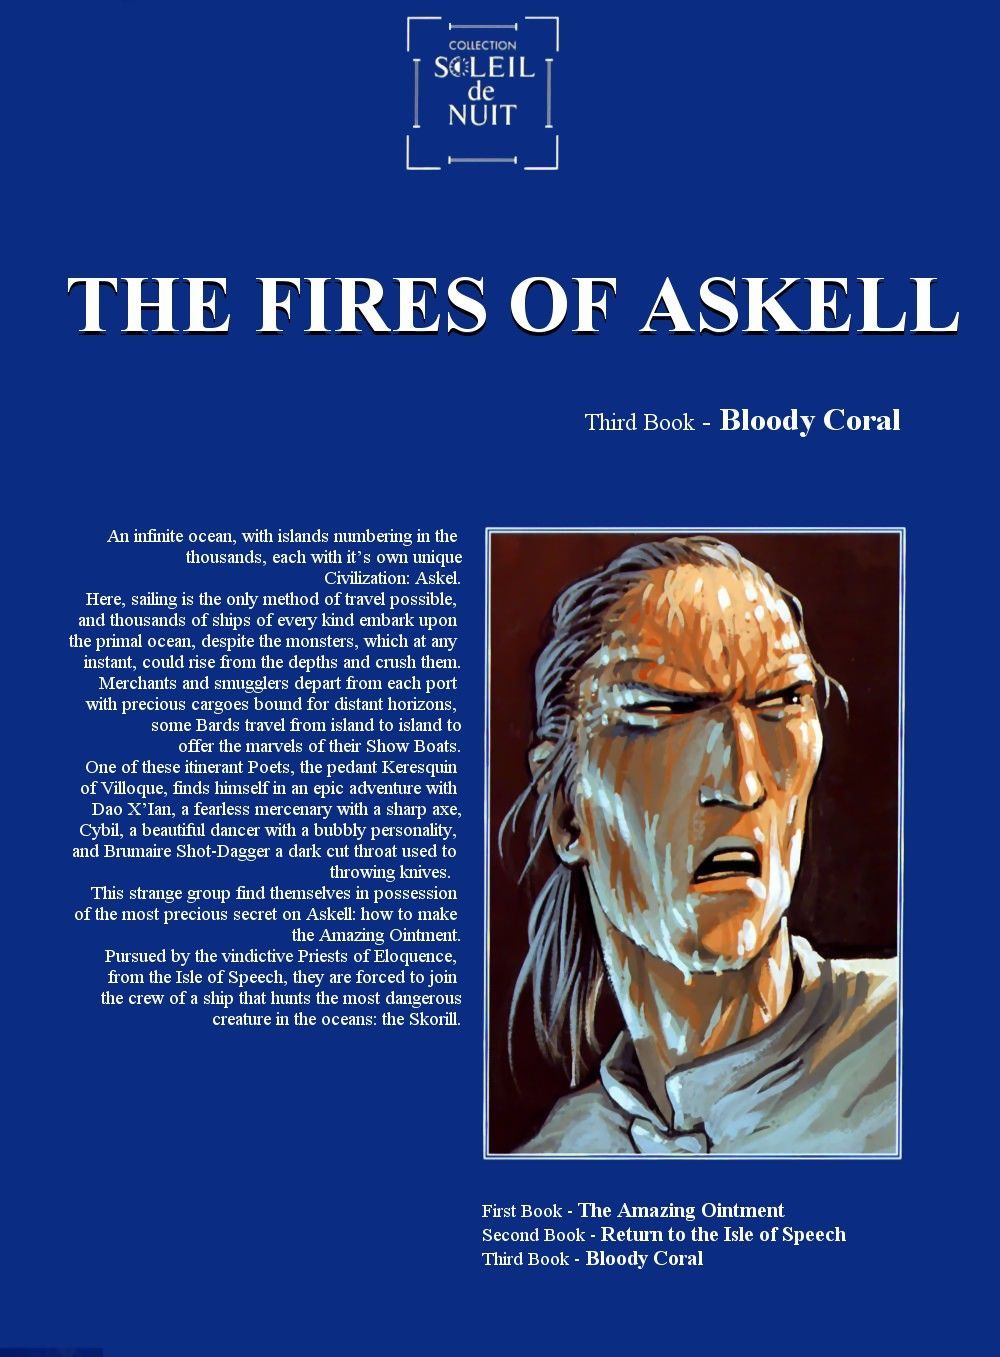 arleston мурье В Пожары из askell #3: кровавый коралловый {jj} часть 3